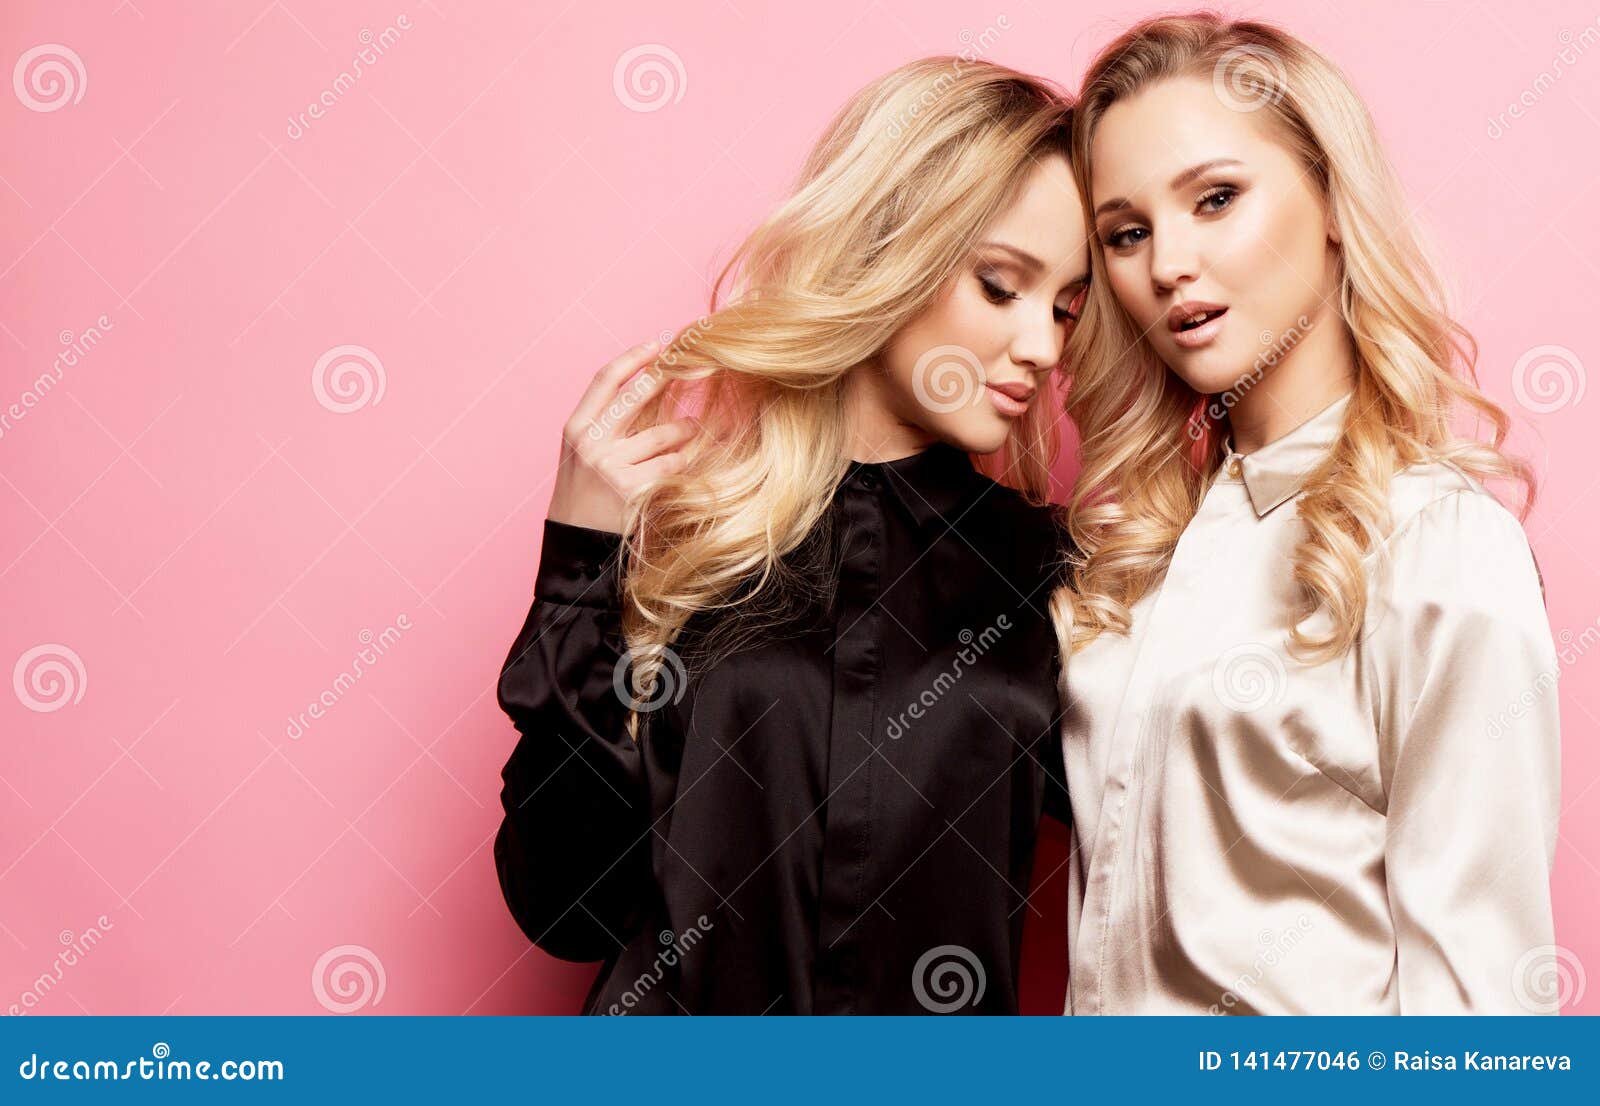 Zwei Schone Junge Frauen In Der Zufalligen Kleidung Die Uber Rosa Hintergrund Aufwirft Stockfoto Bild Von Rosa Junge 141477046